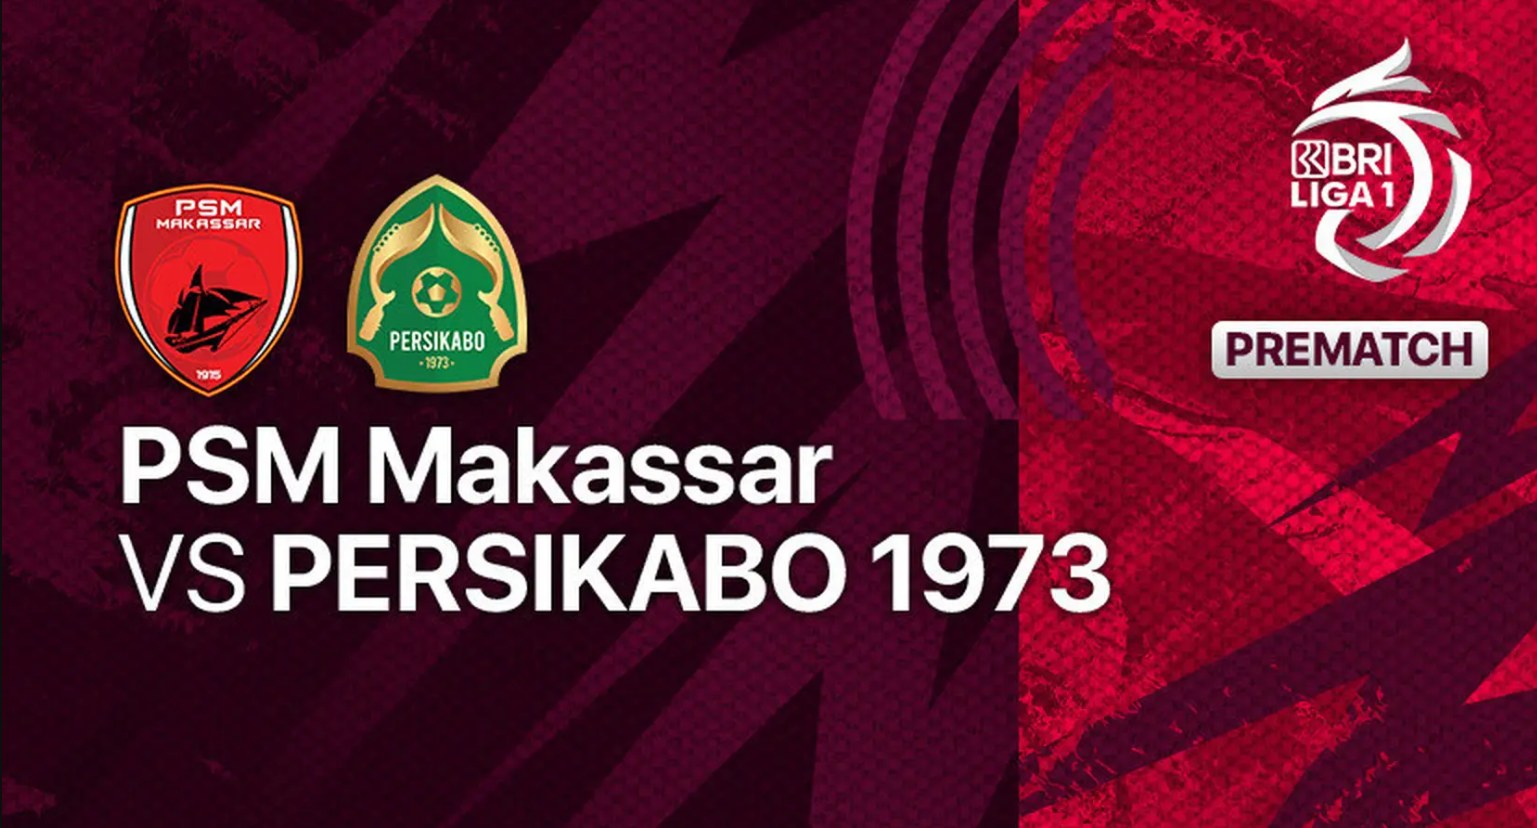 LIVE SCORE Laga PSM Makassar vs Persikabo BRI Liga 1 2022-23 Lengkap Link Streaming, Langsung Klik di Sini Sekarang